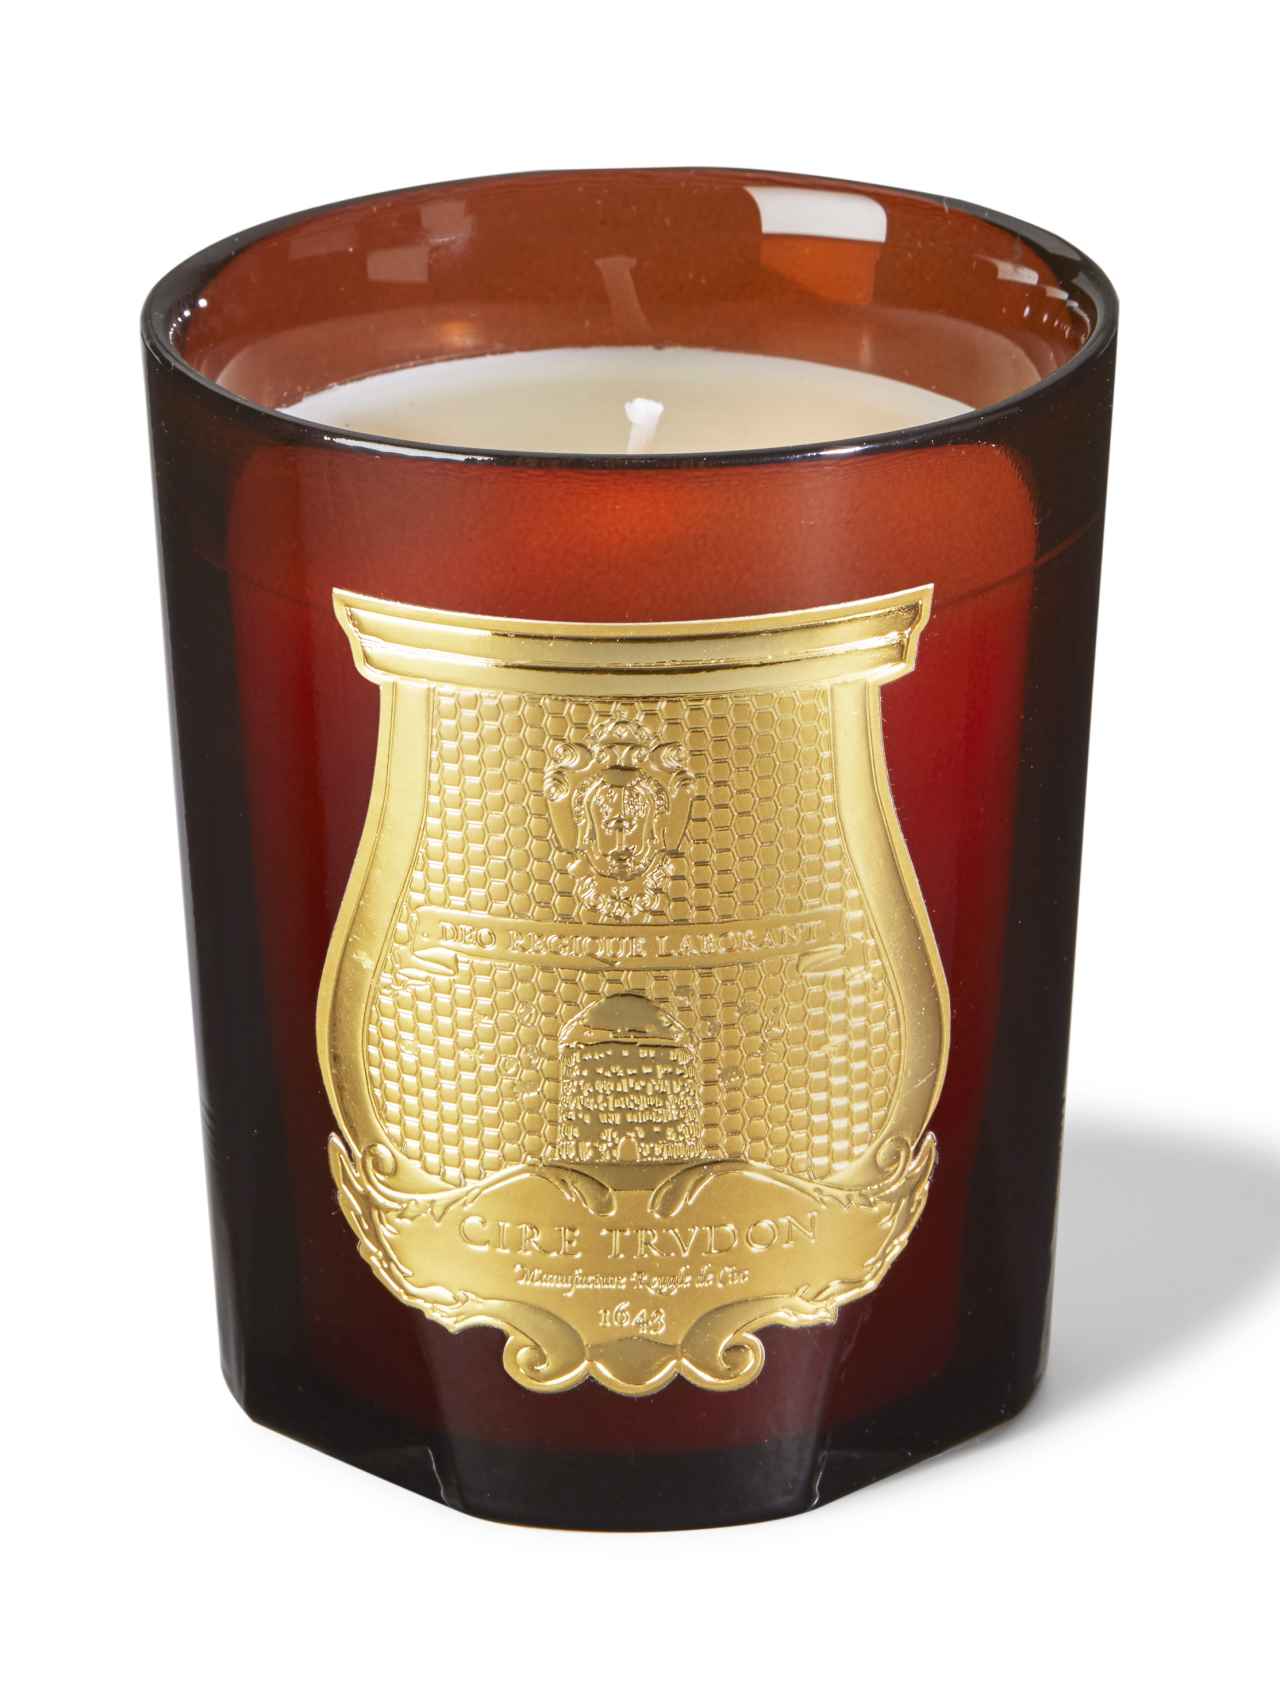 La Maison Trudon destina el 4% de las ventas de esta vela perfumada Cire, una composición en torno a la fragancia de Absoluto de Cera de Abejas, a la protección de la Abeja Negra. P.V.P.: 85 € / 270 gr.